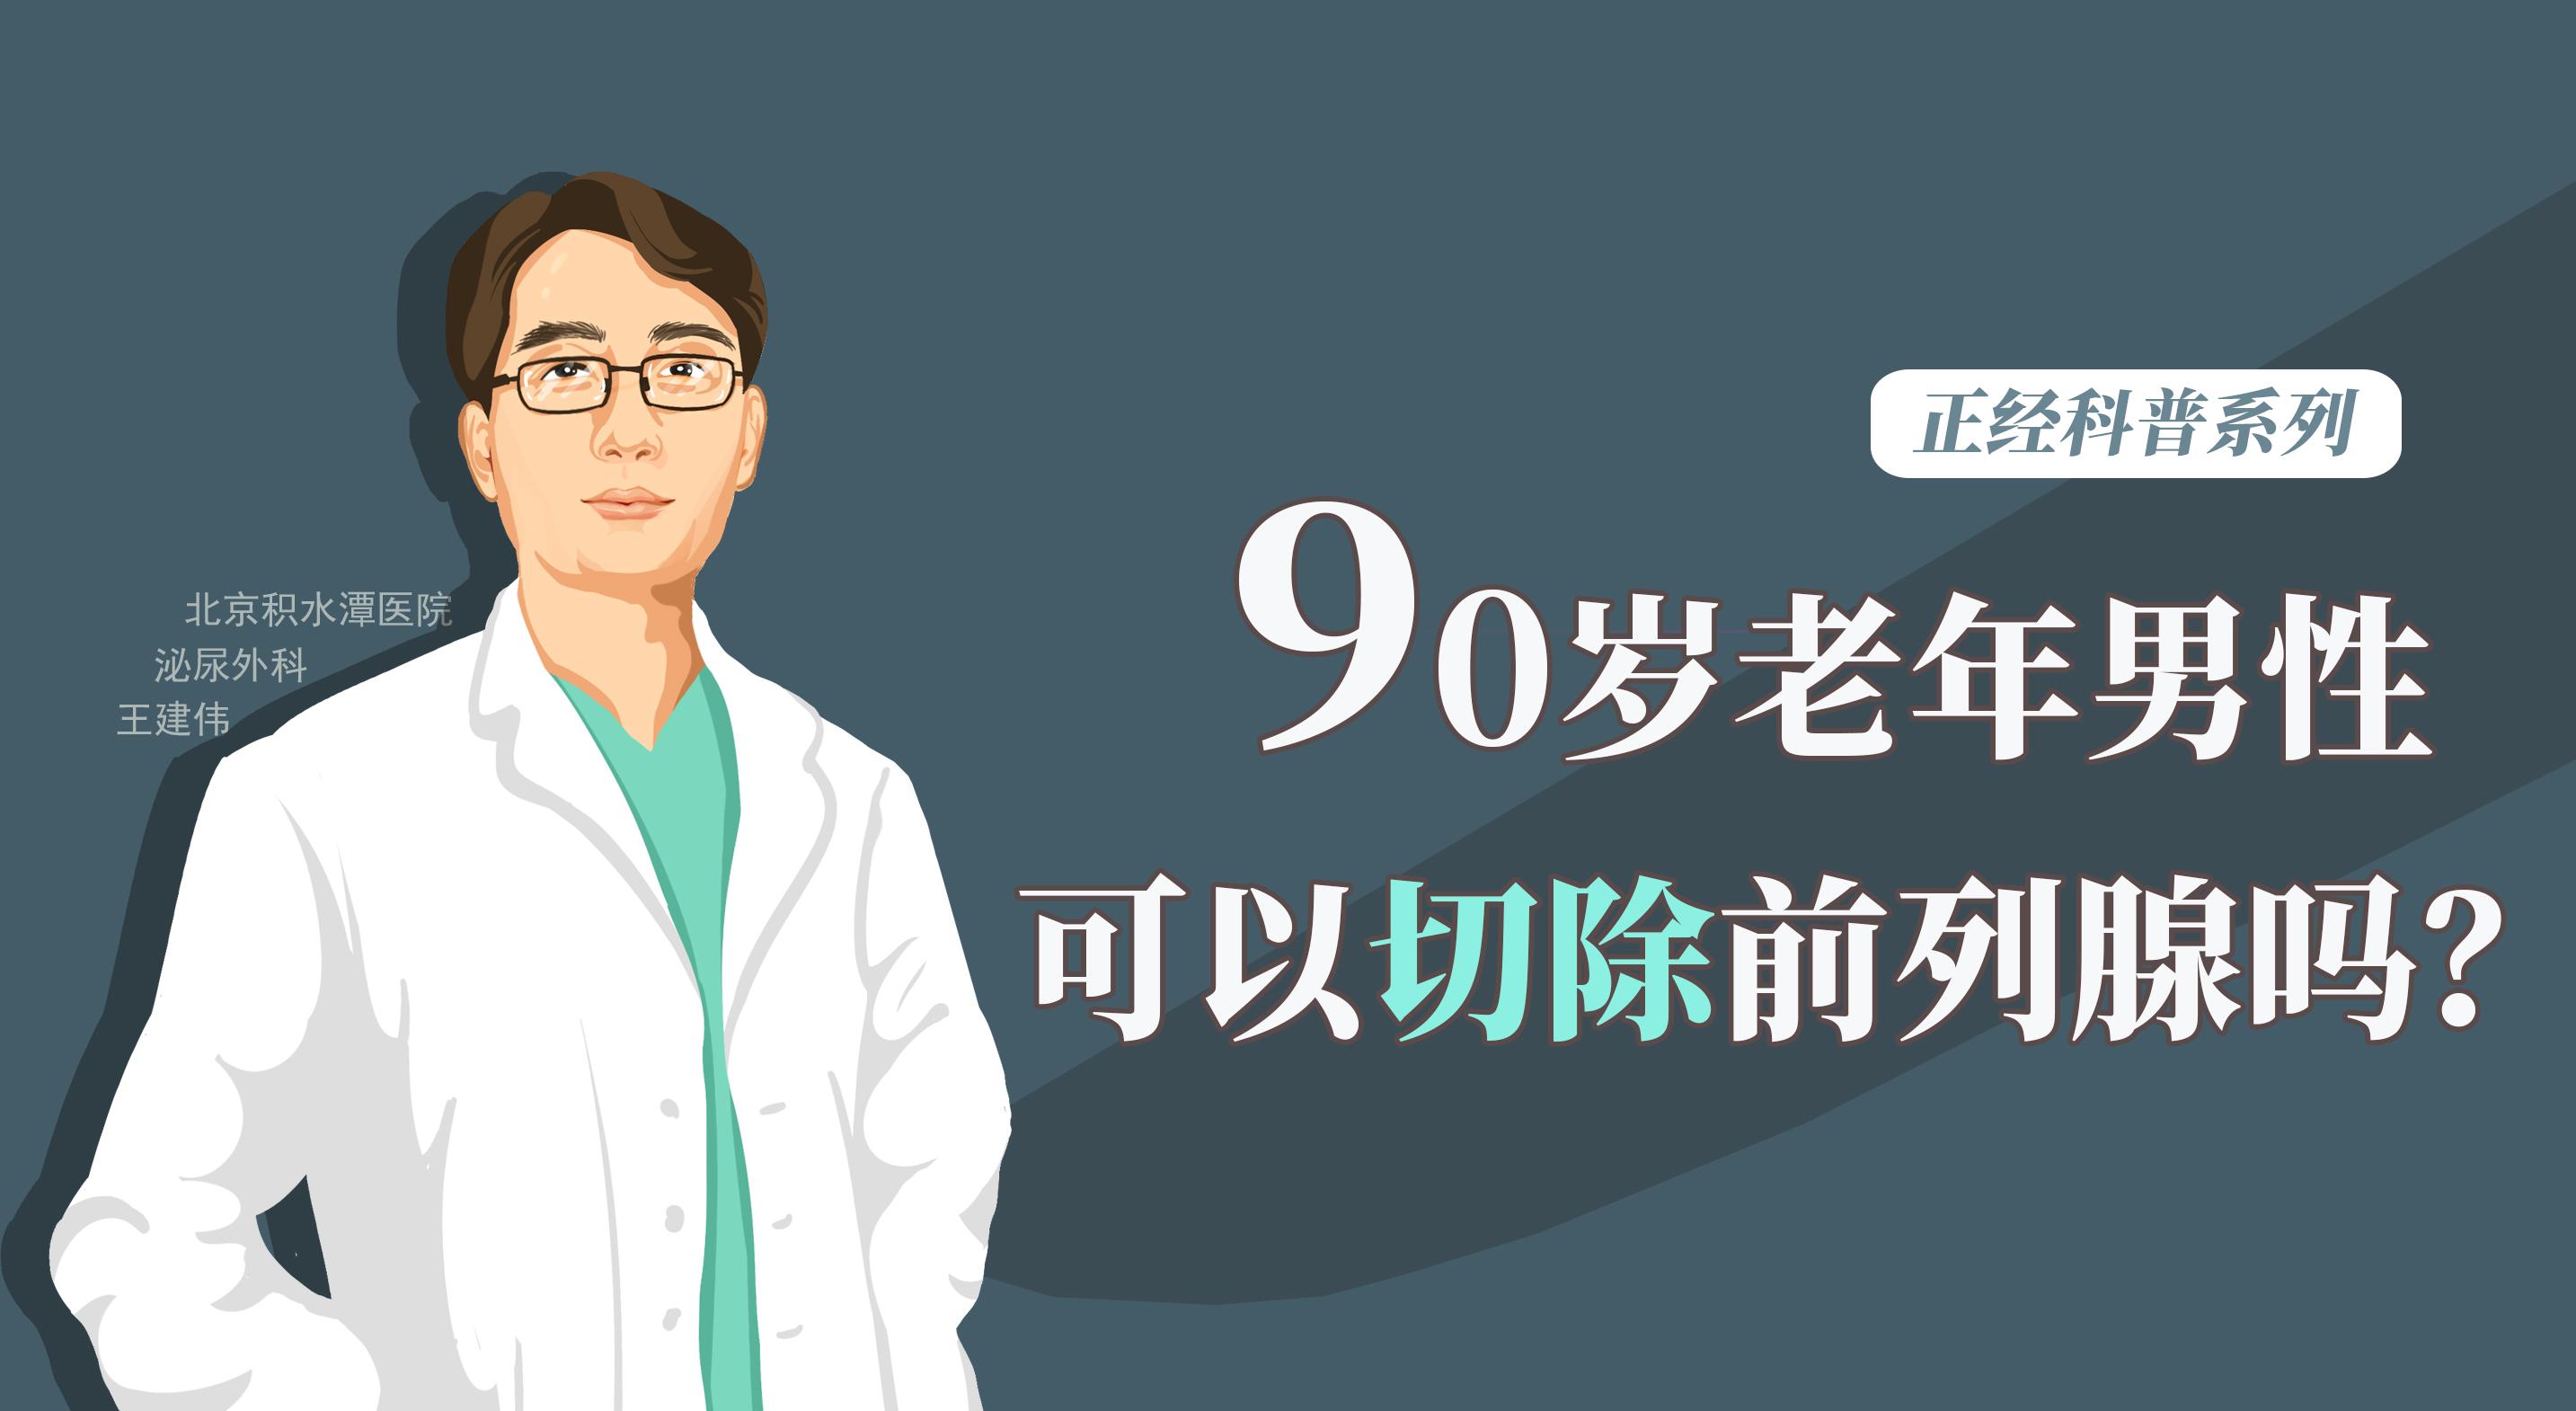 前列腺的“男言之隐”——《中国男性前列腺健康白皮书》解析 - 知乎